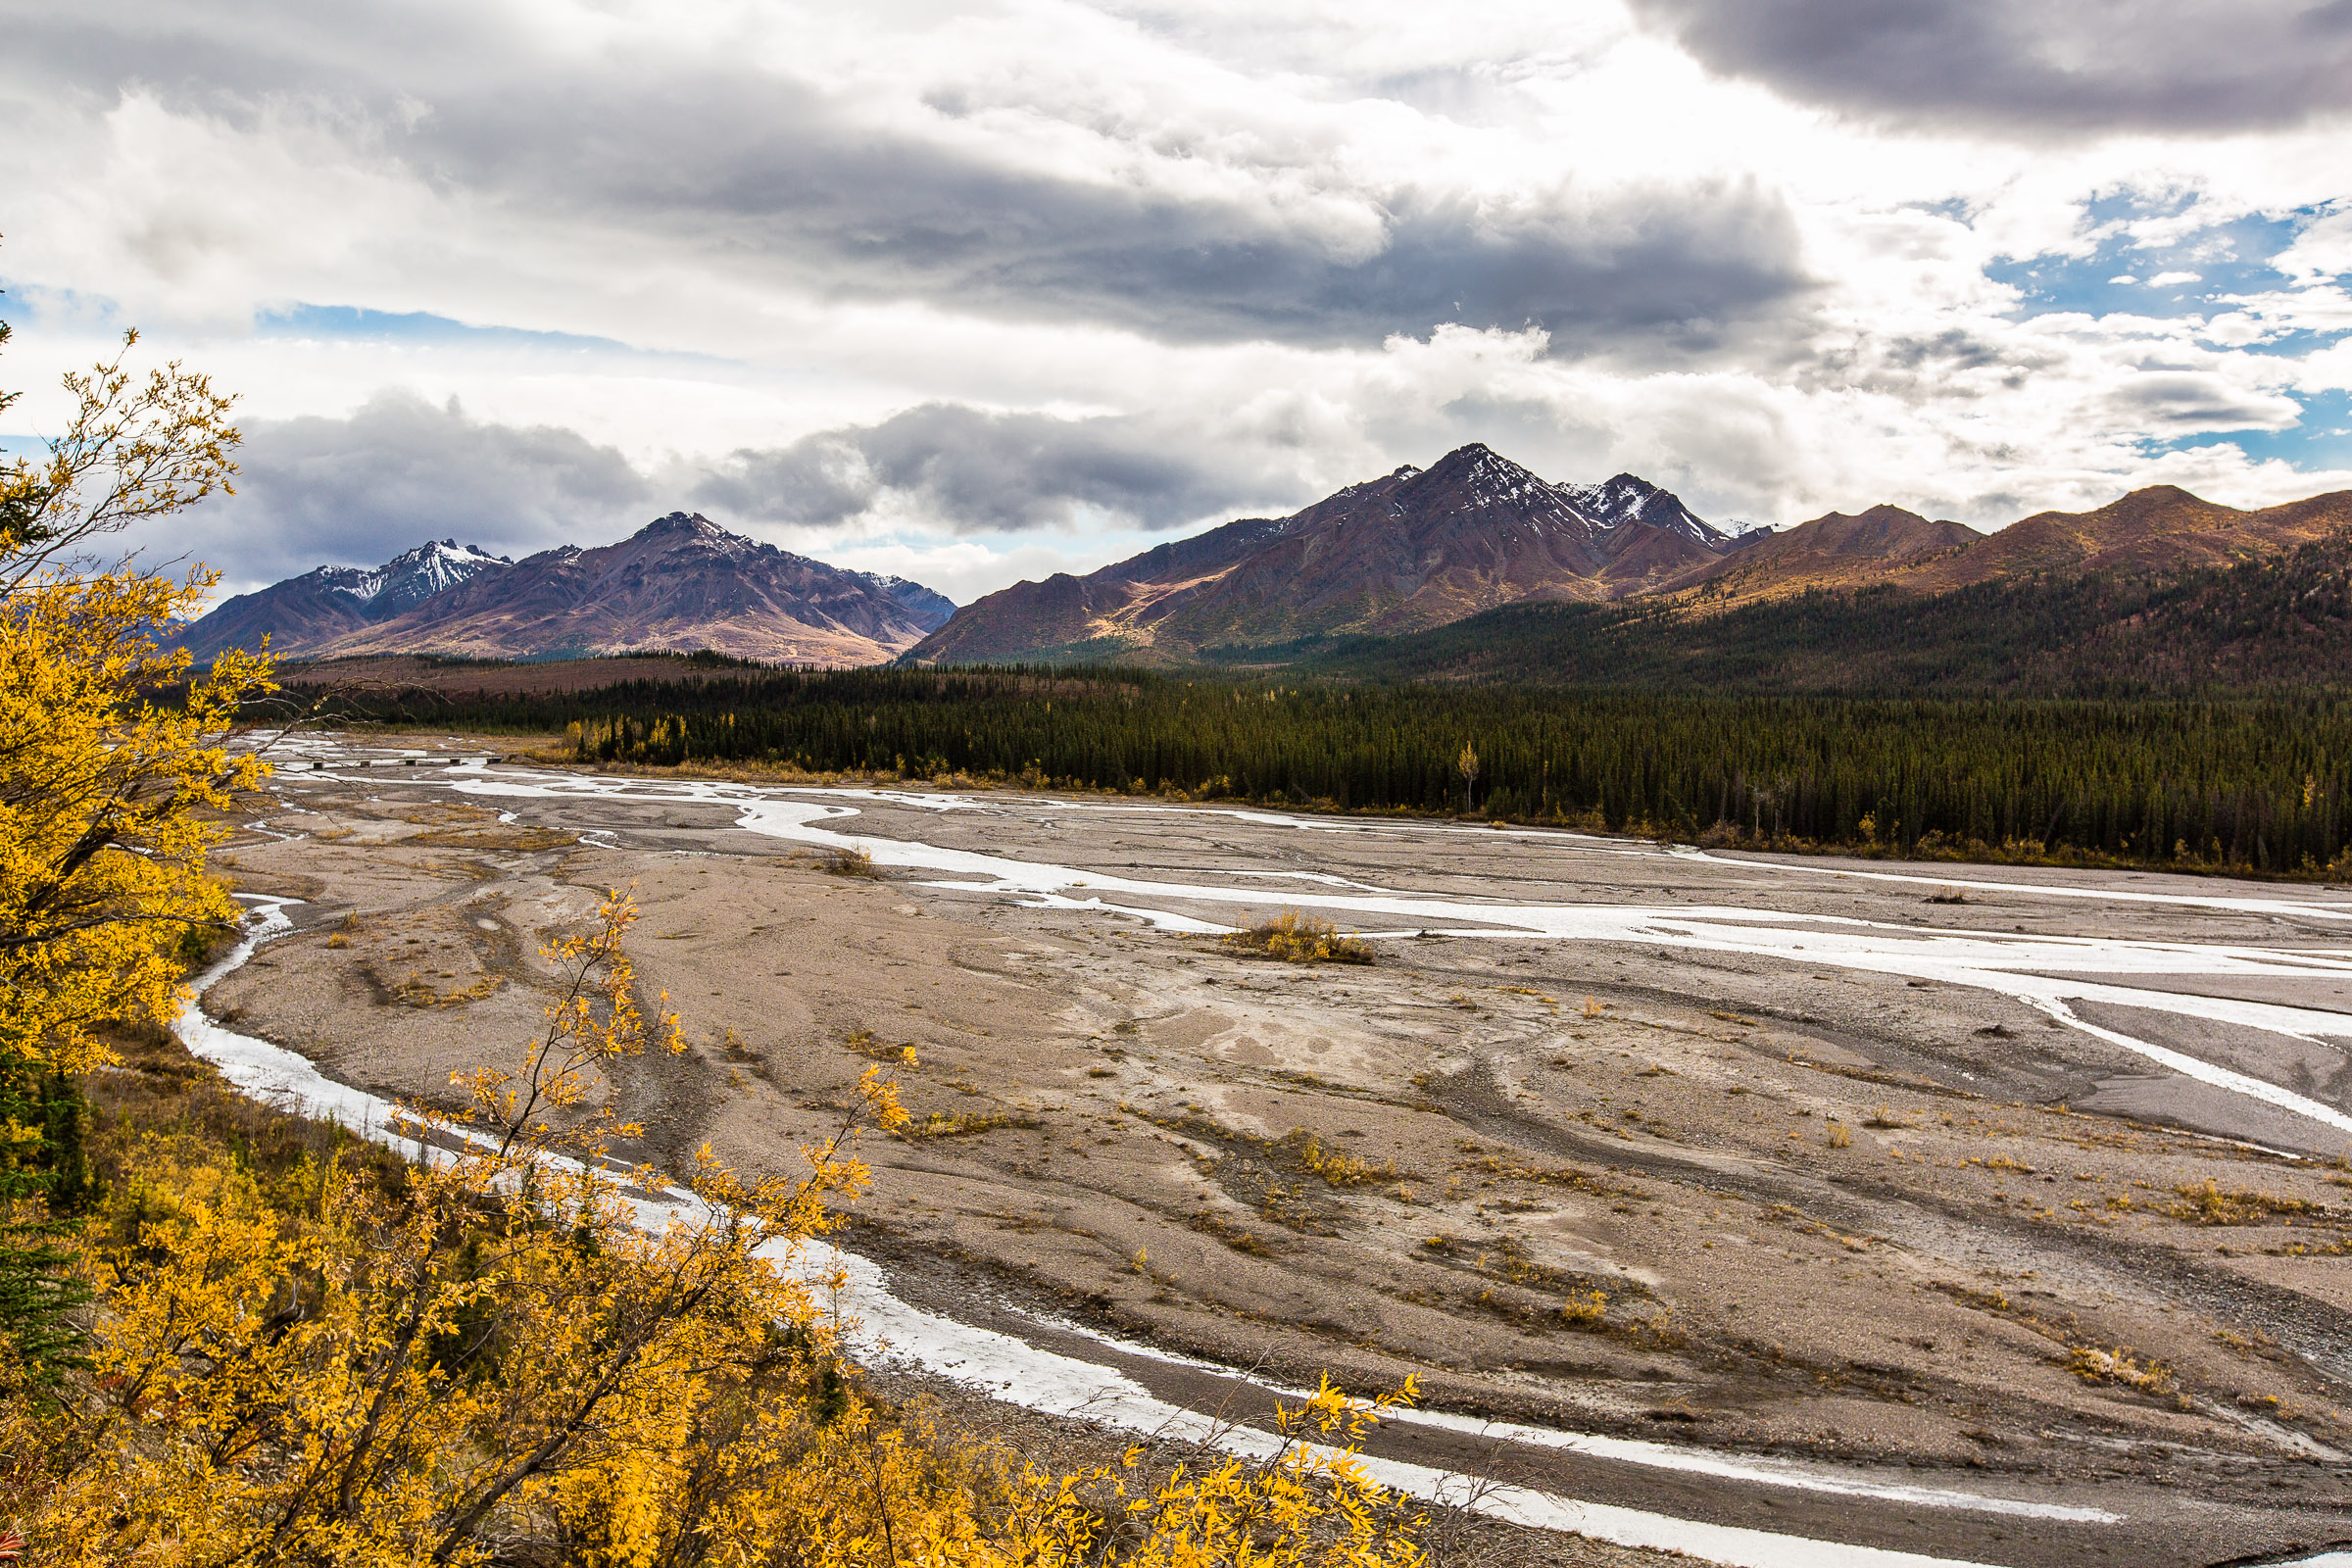 Teklanika River From Denali National Park in Alaska.